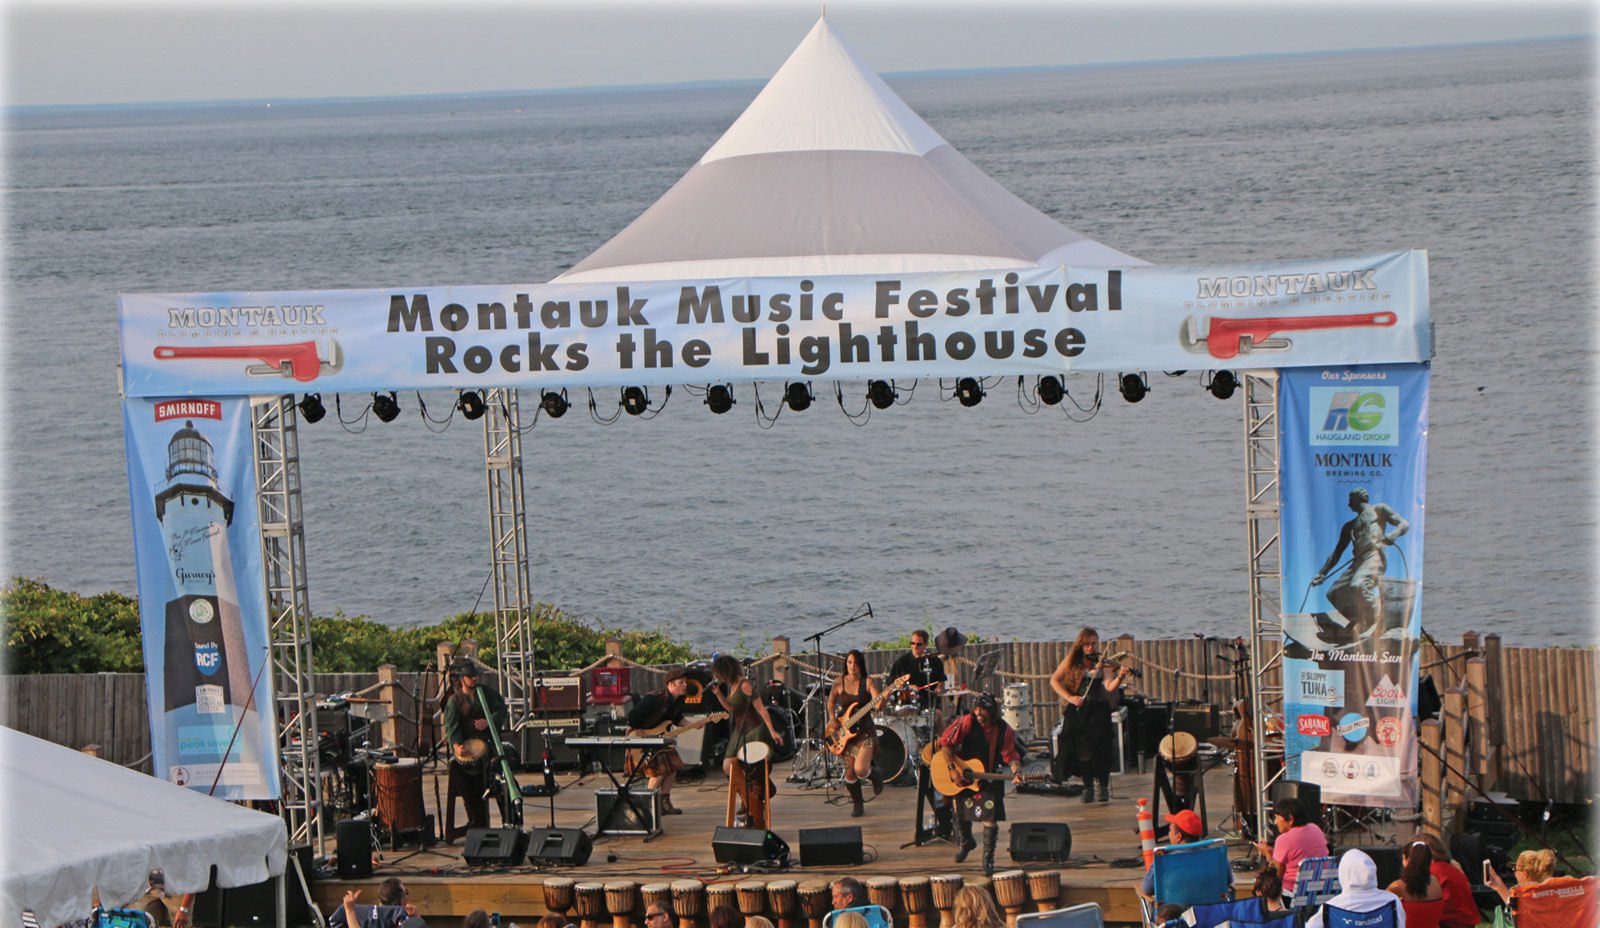 Montauk music festival rocks the lighthouse.